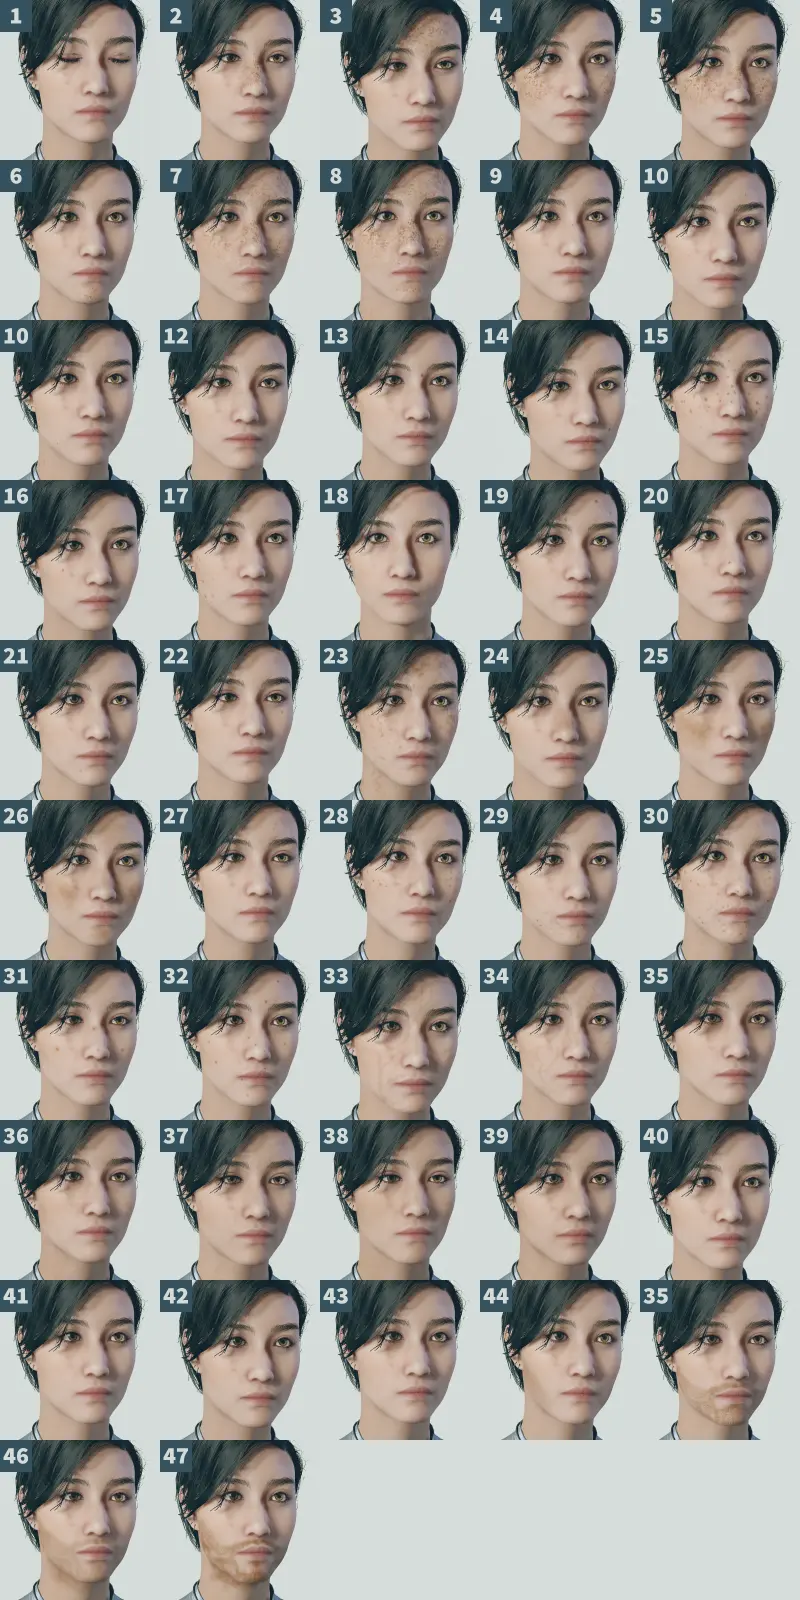 スターフィールドのキャラメイク画面で、顔の特徴の種類と呼ばれる47種類の選択できる部分のスクリーンショット